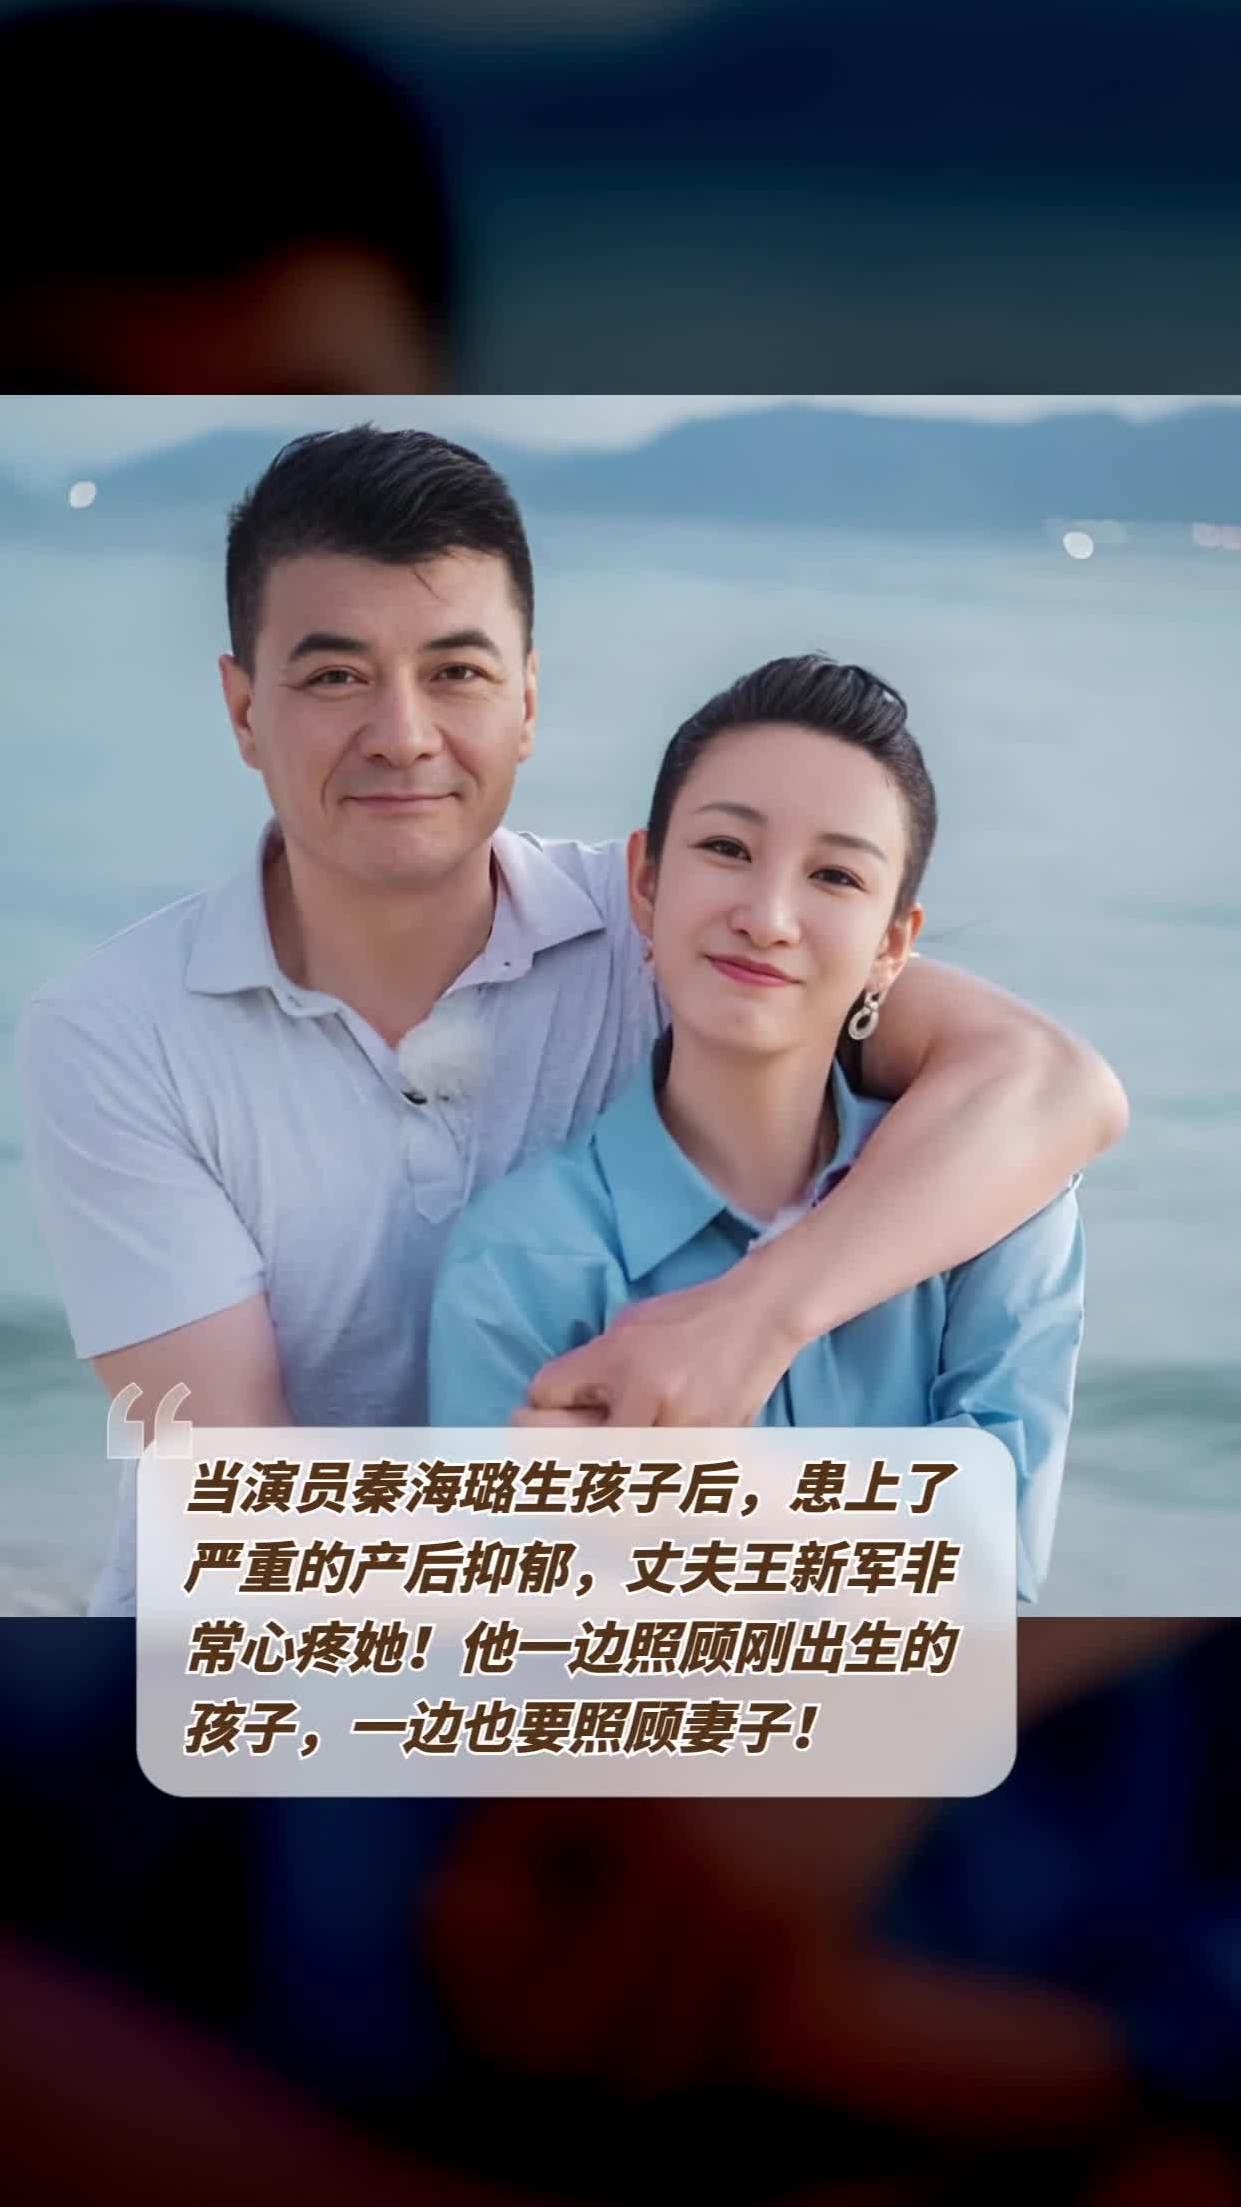 他决定放弃自己的事业回归家庭,而让妻子演员秦海璐的老公及儿子照片